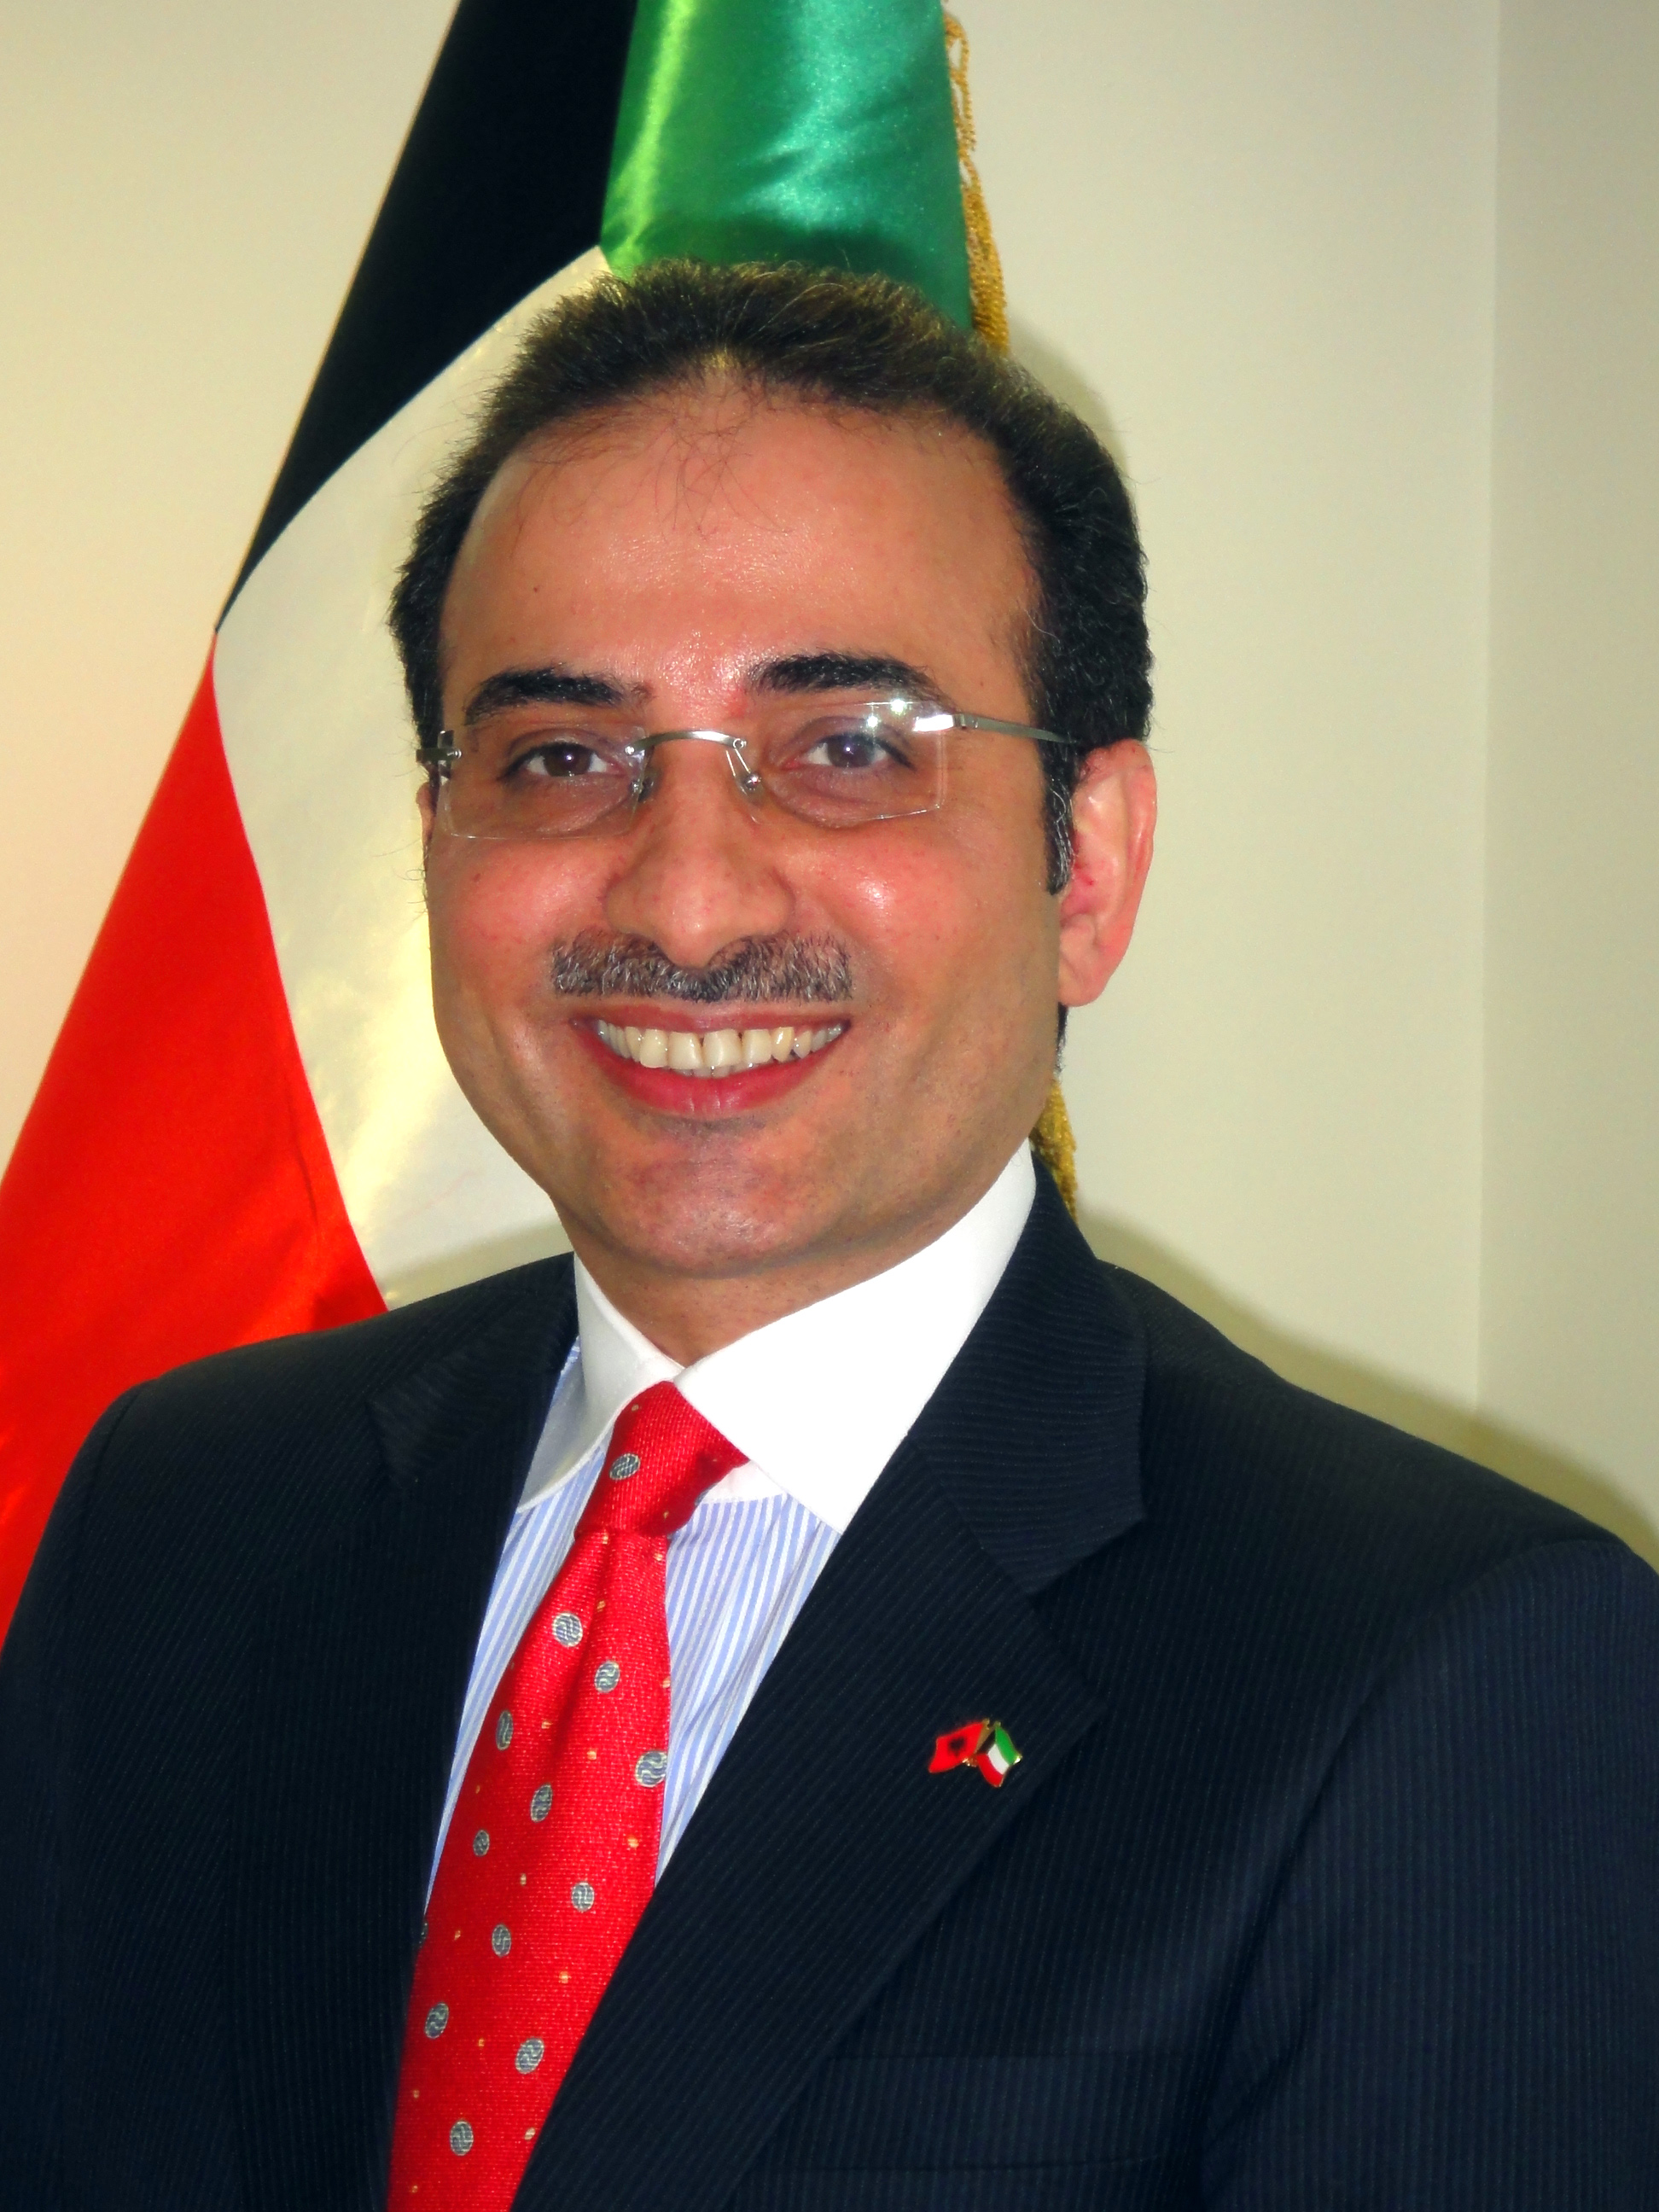 سفير دولة الكويت لدى جمهورية البانيا نجيب عبدالرحمن البدر